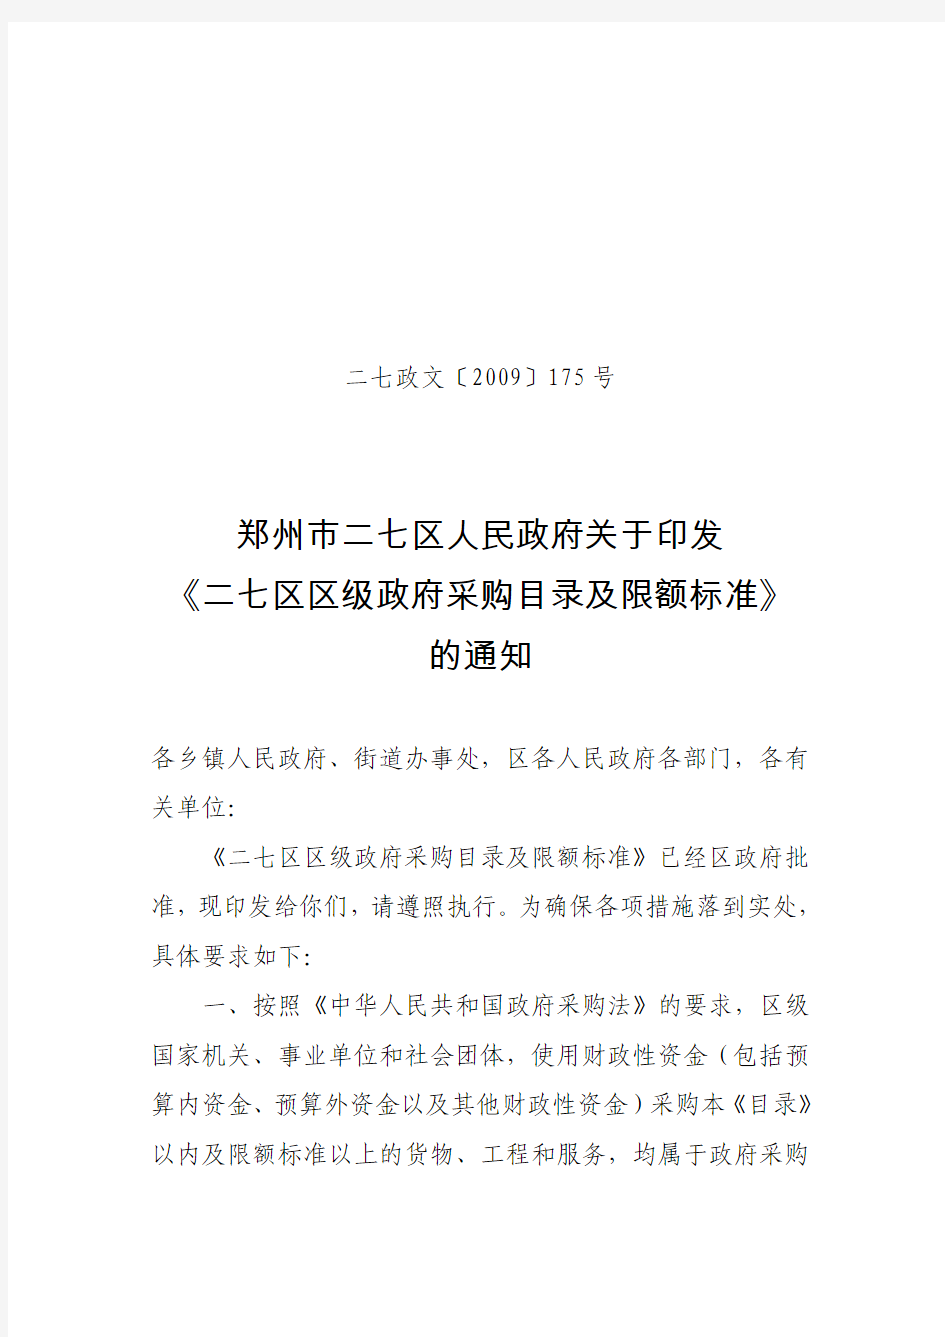 郑州市二七区人民政府关于印发《二七区区级政府采购目录及限额标准》的通知